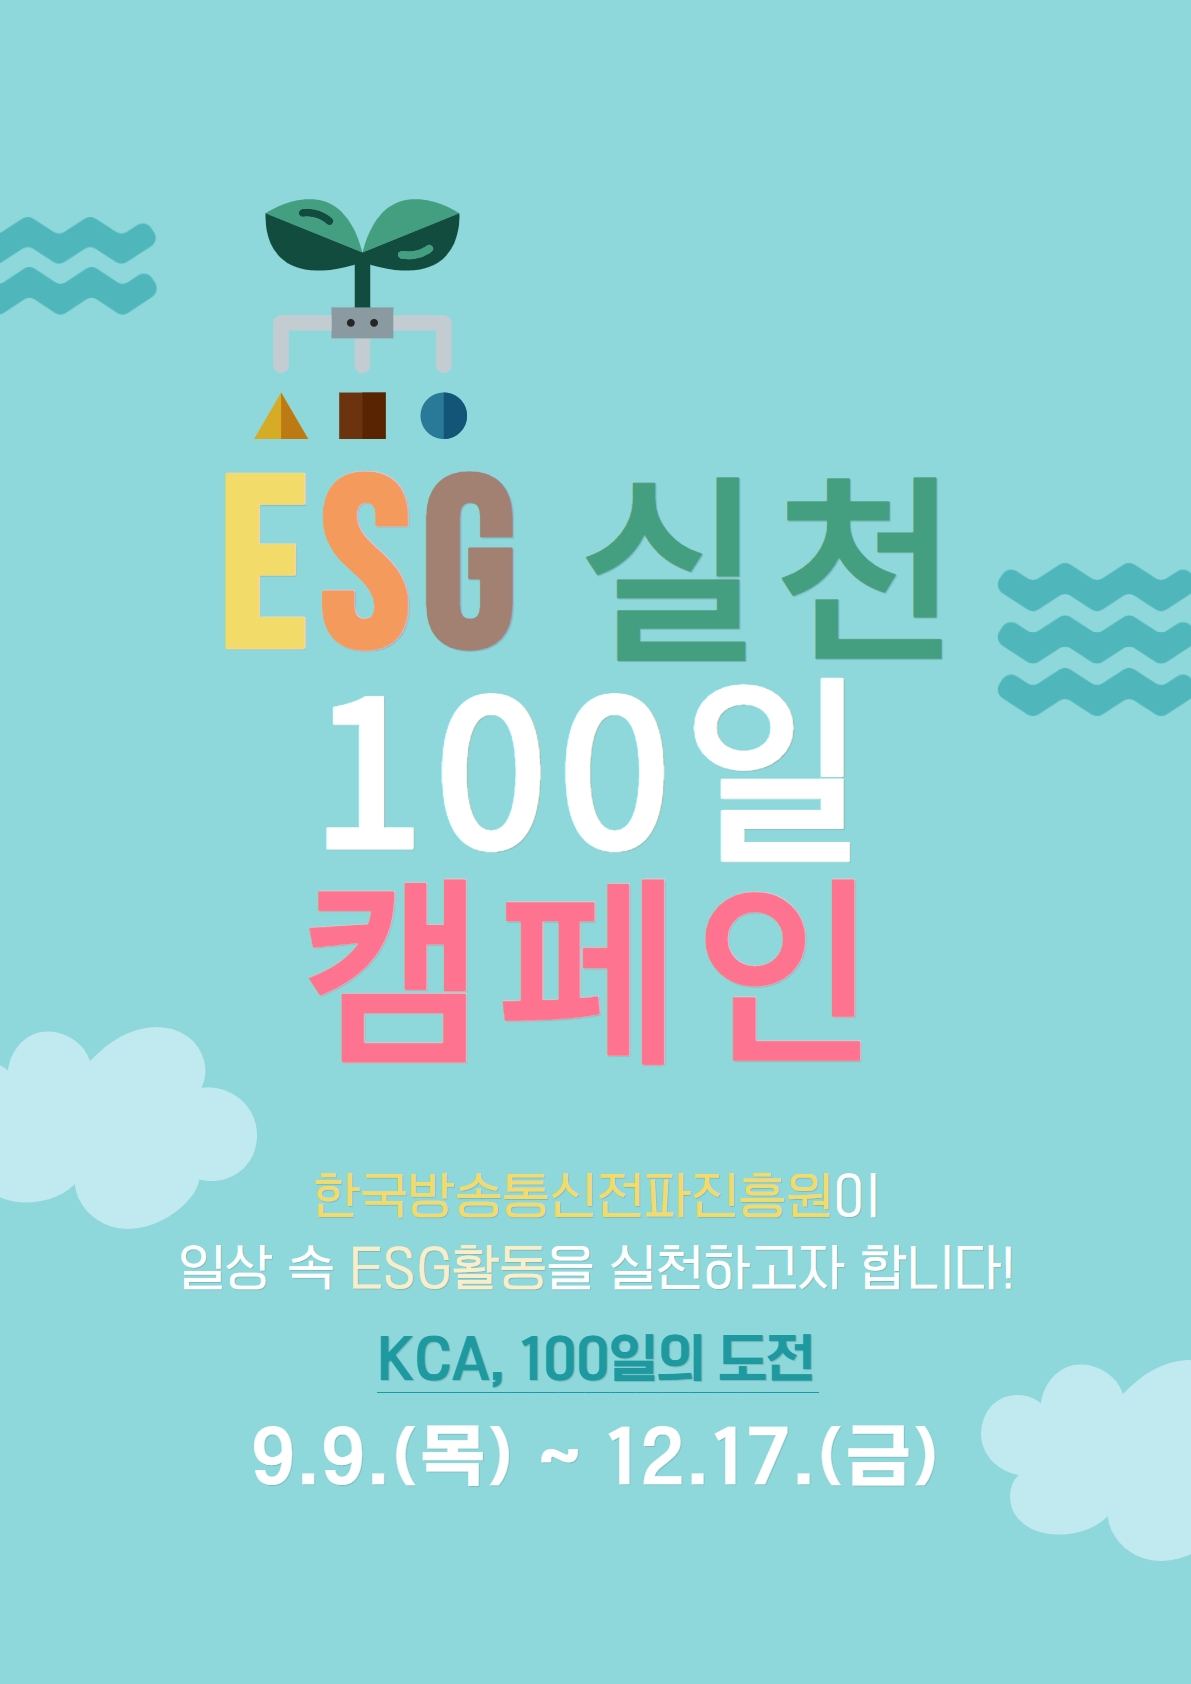 전파진흥원 ESG 실천 100일 캠페인 실시